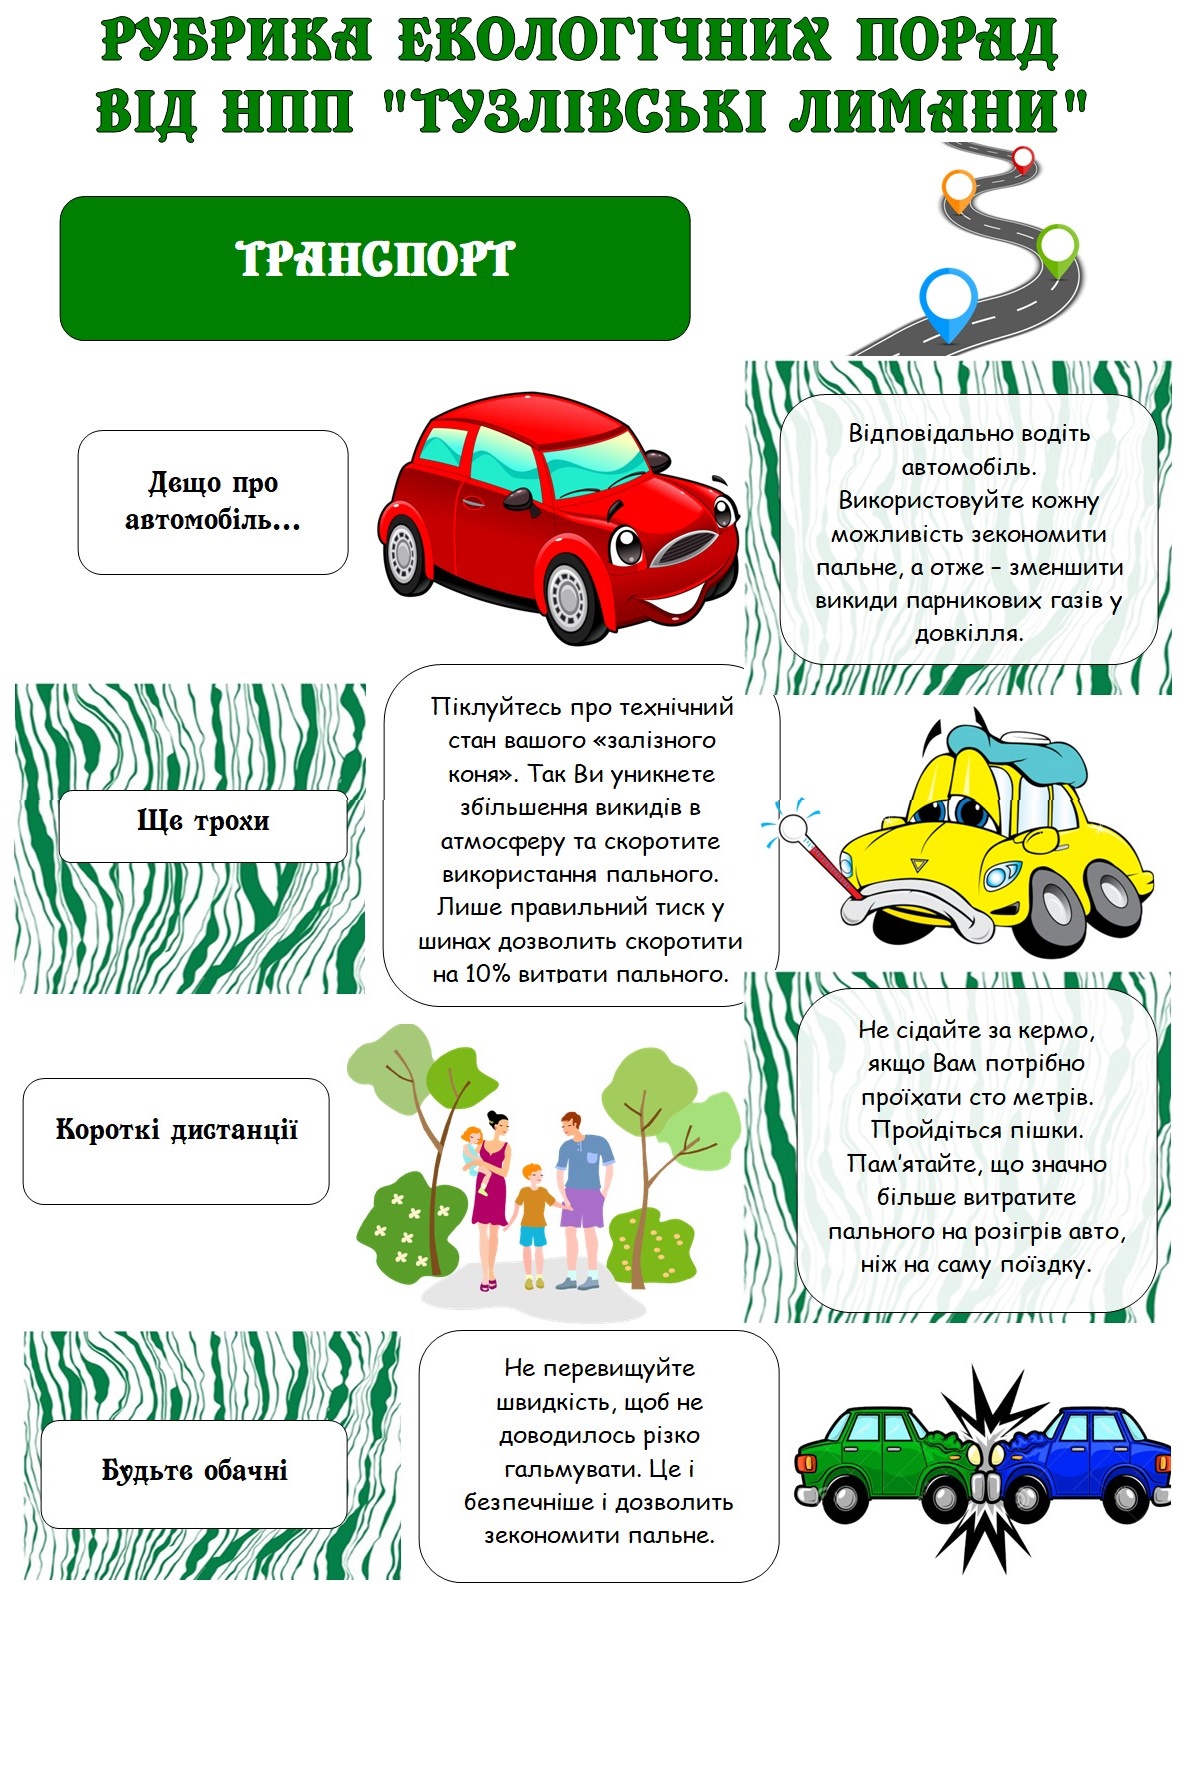 Екологи нацпарку "Тузлівські лимани" пропонують завтра усім забути про автомобілі